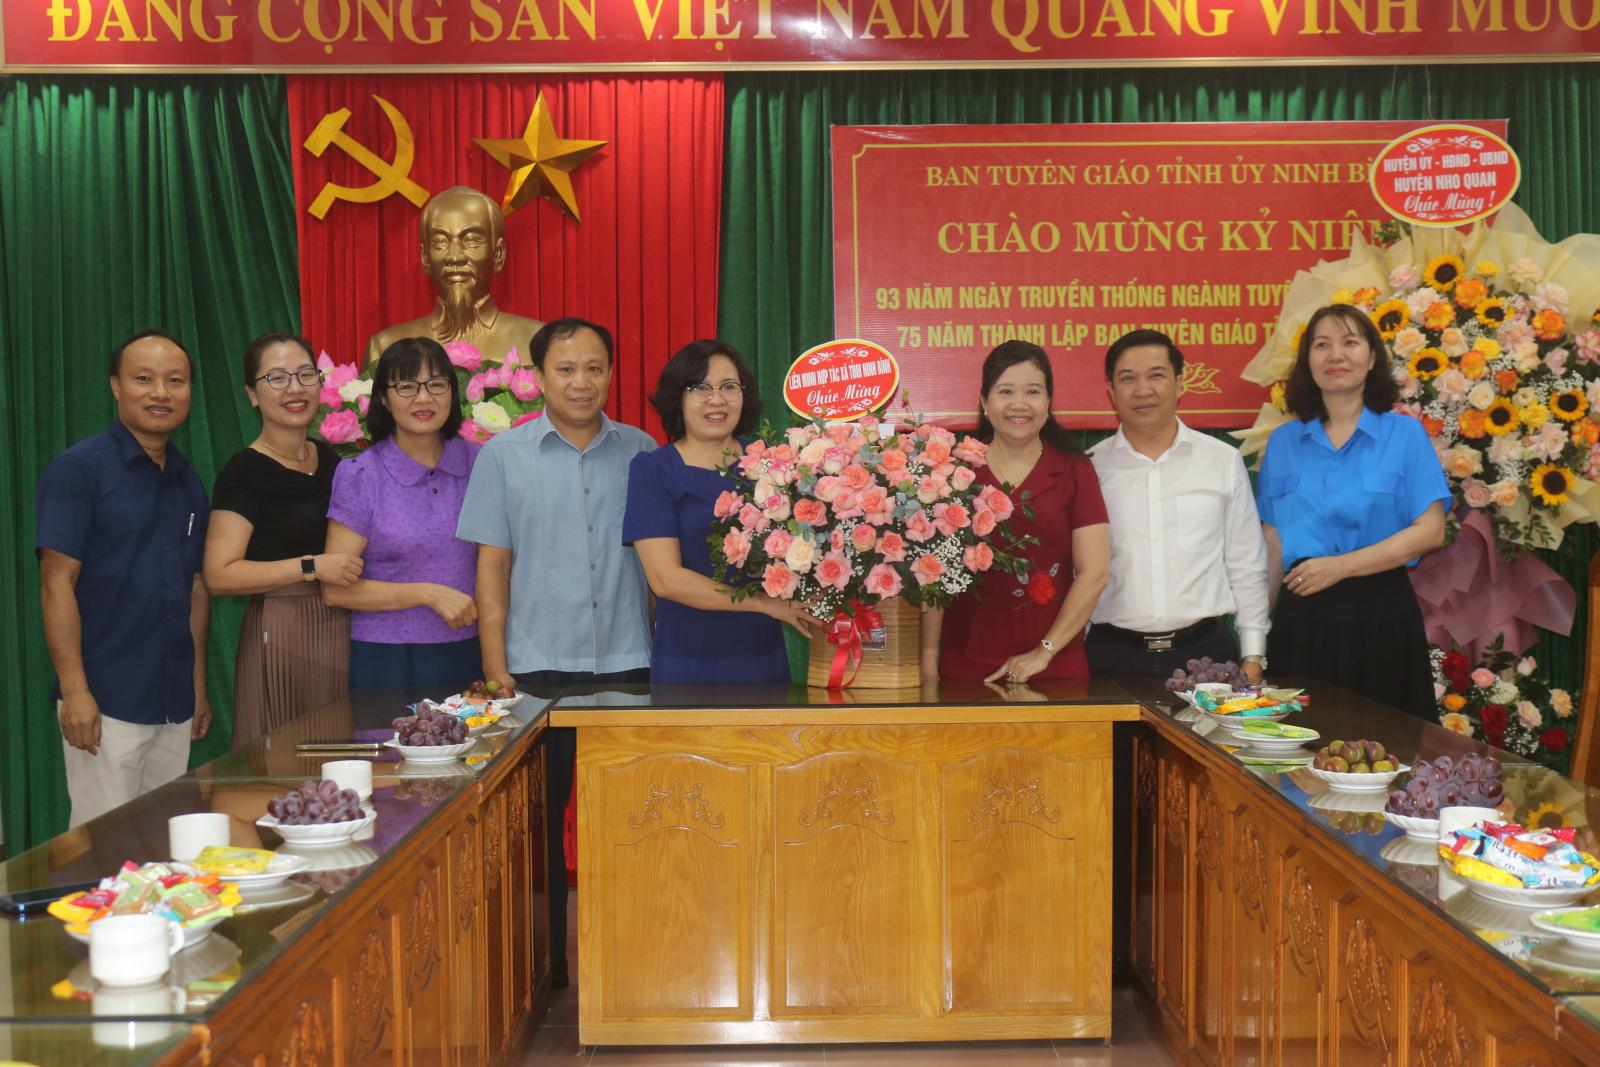 Liên minh HTX tỉnh Ninh Bình chúc mừng Ngày truyền thống ngành Tuyên giáo của Đảng   